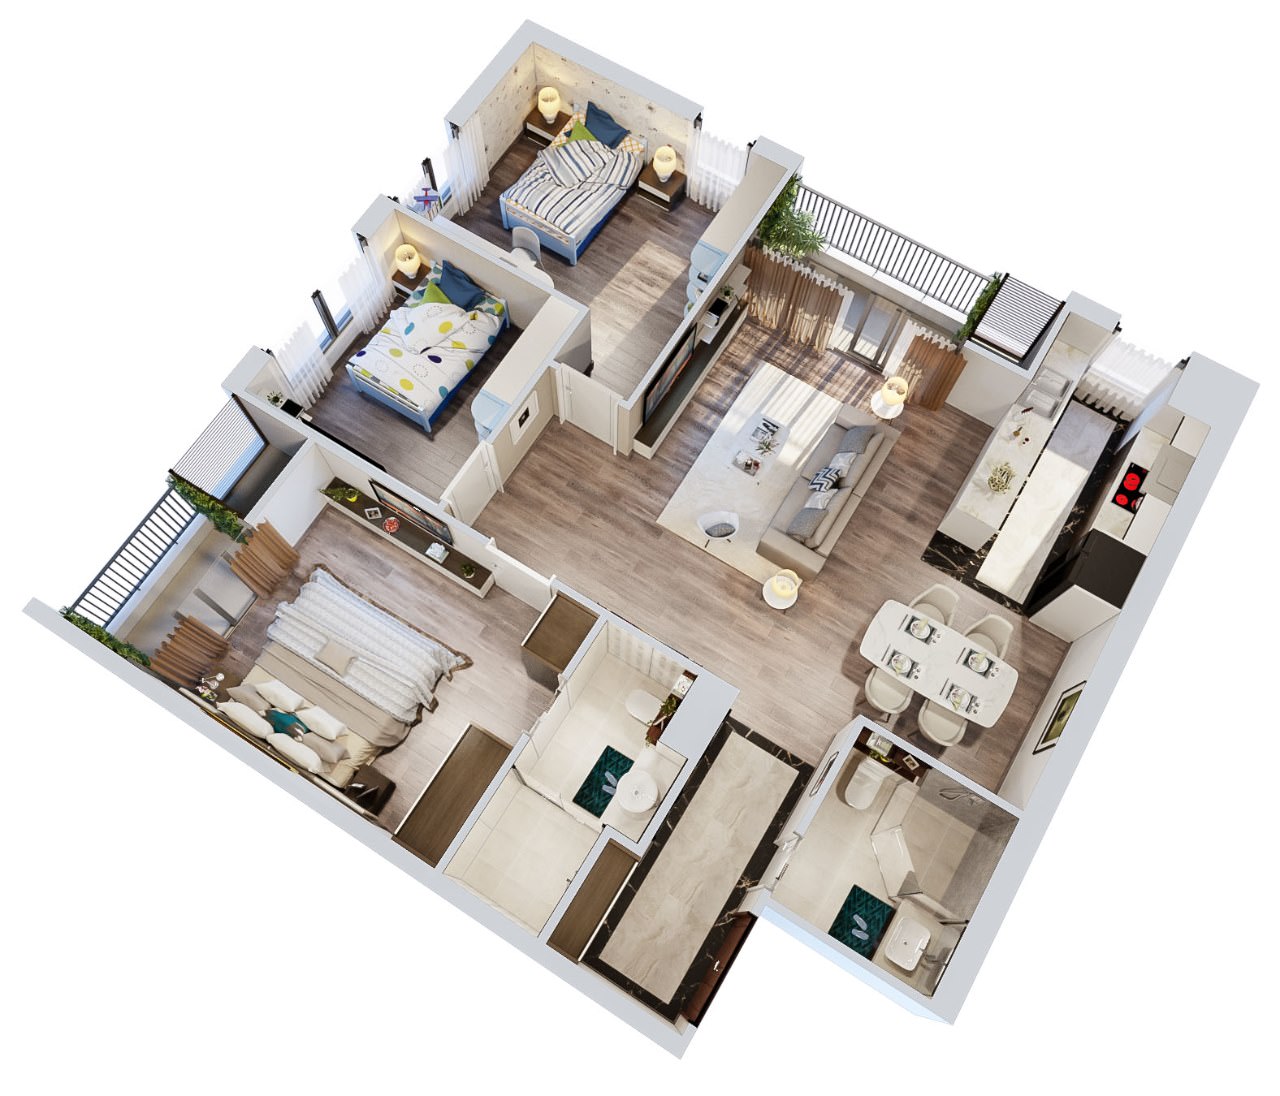 Báo giá hoàn thiện nội thất căn hộ chung cư 70m2 đẹp 2, 3 phòng ngủ